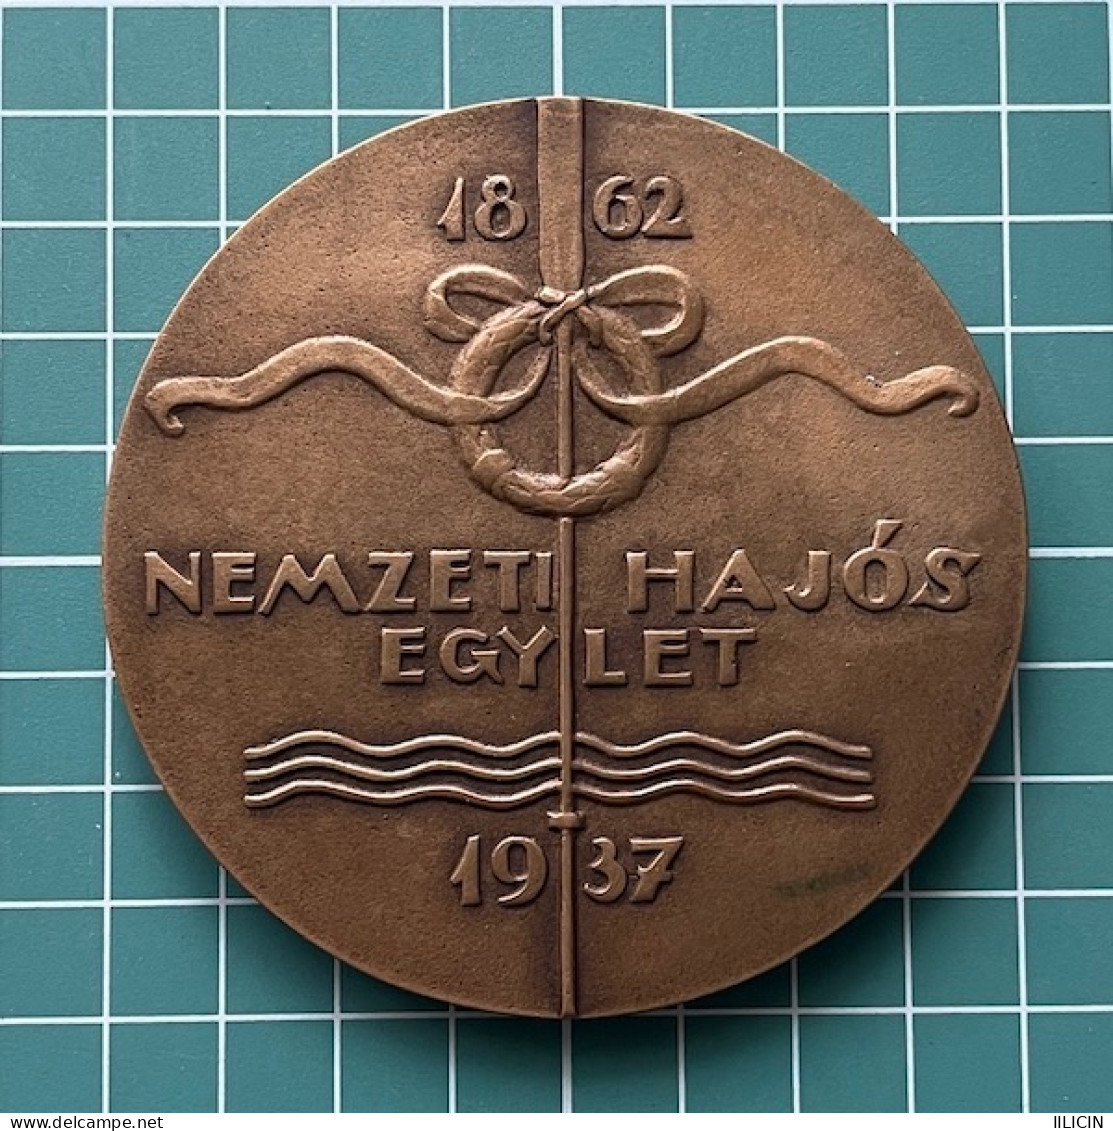 Medal Plaque Plakette PL000315 - Hungary National Boating Association 1937 JÓZSEF REMÉNYI 175g - Rudersport